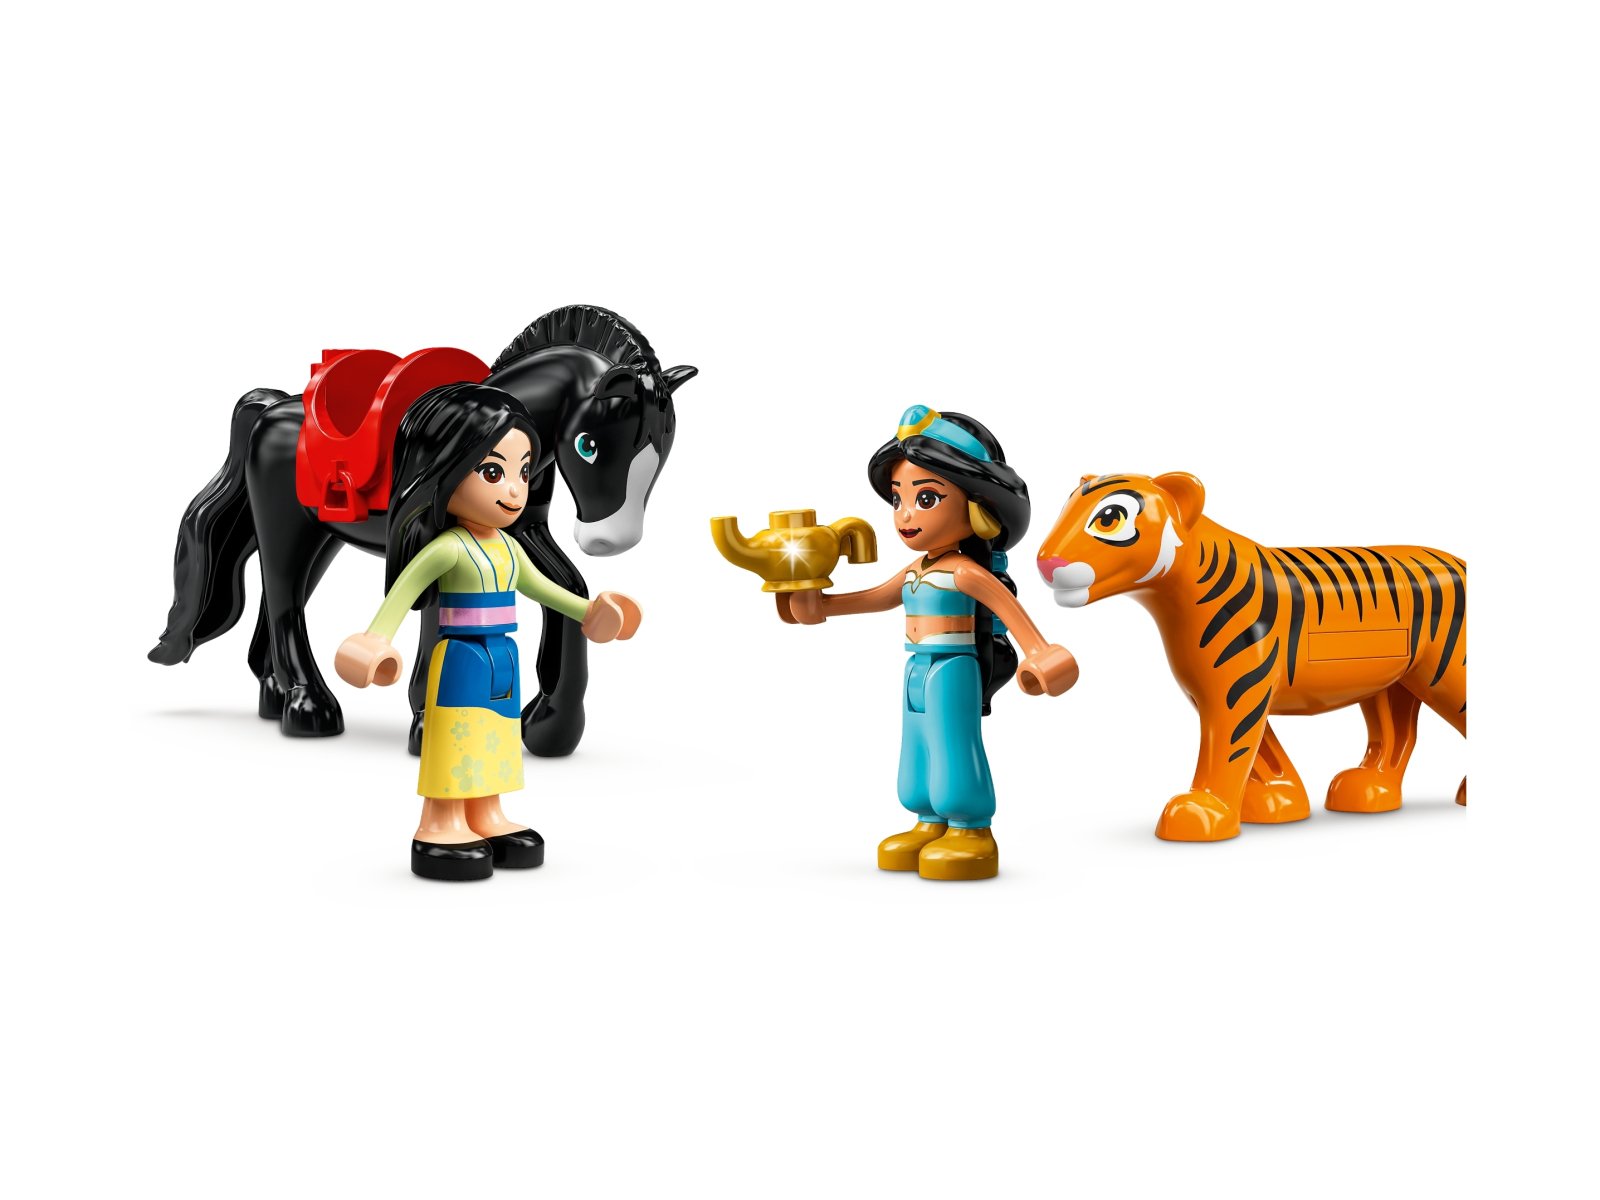 LEGO 43208 Disney Przygoda Dżasminy i Mulan